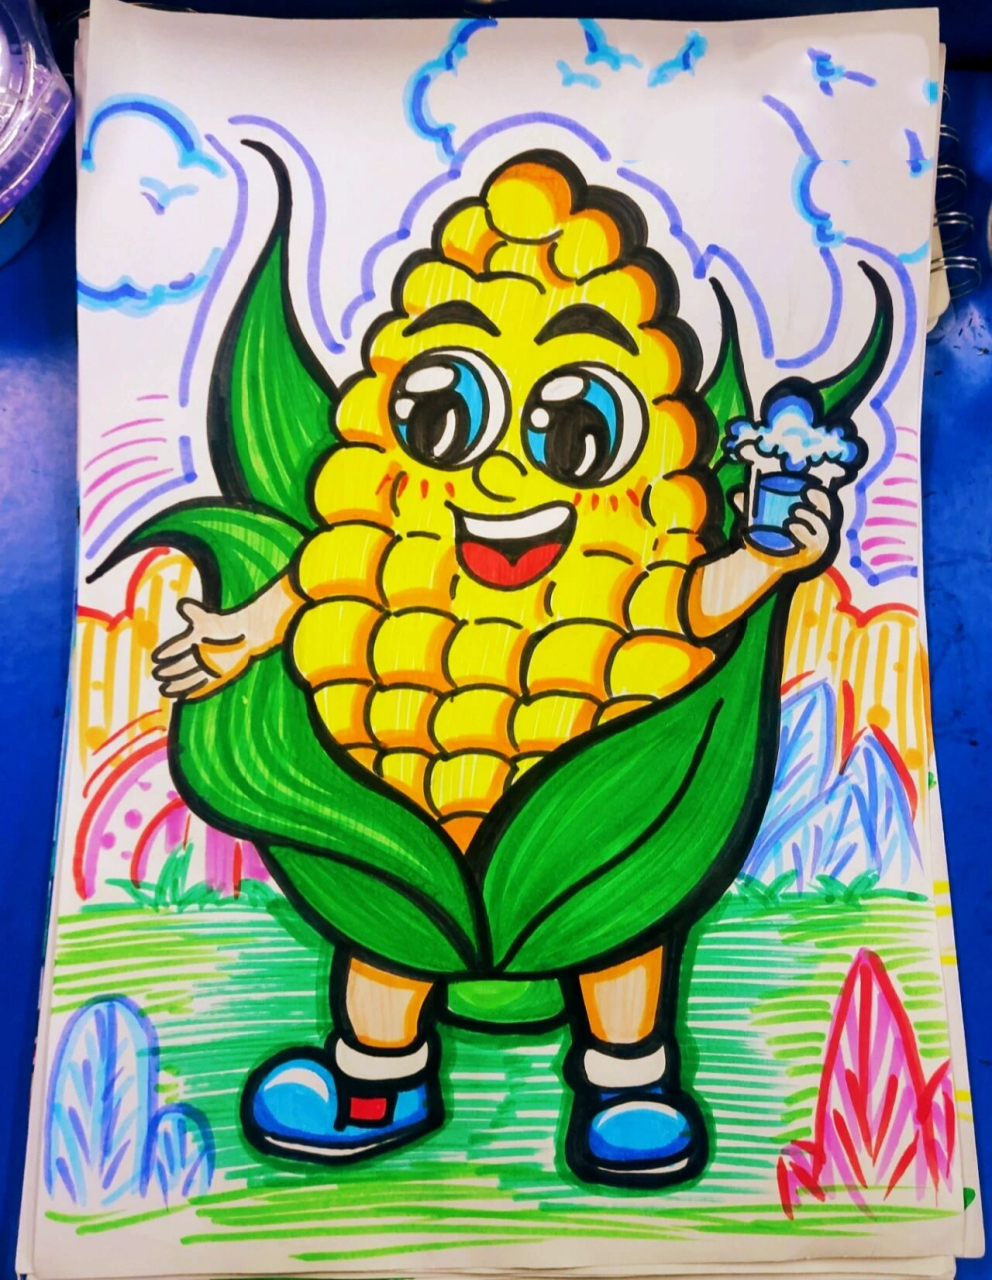 玉米简笔画 彩色图片